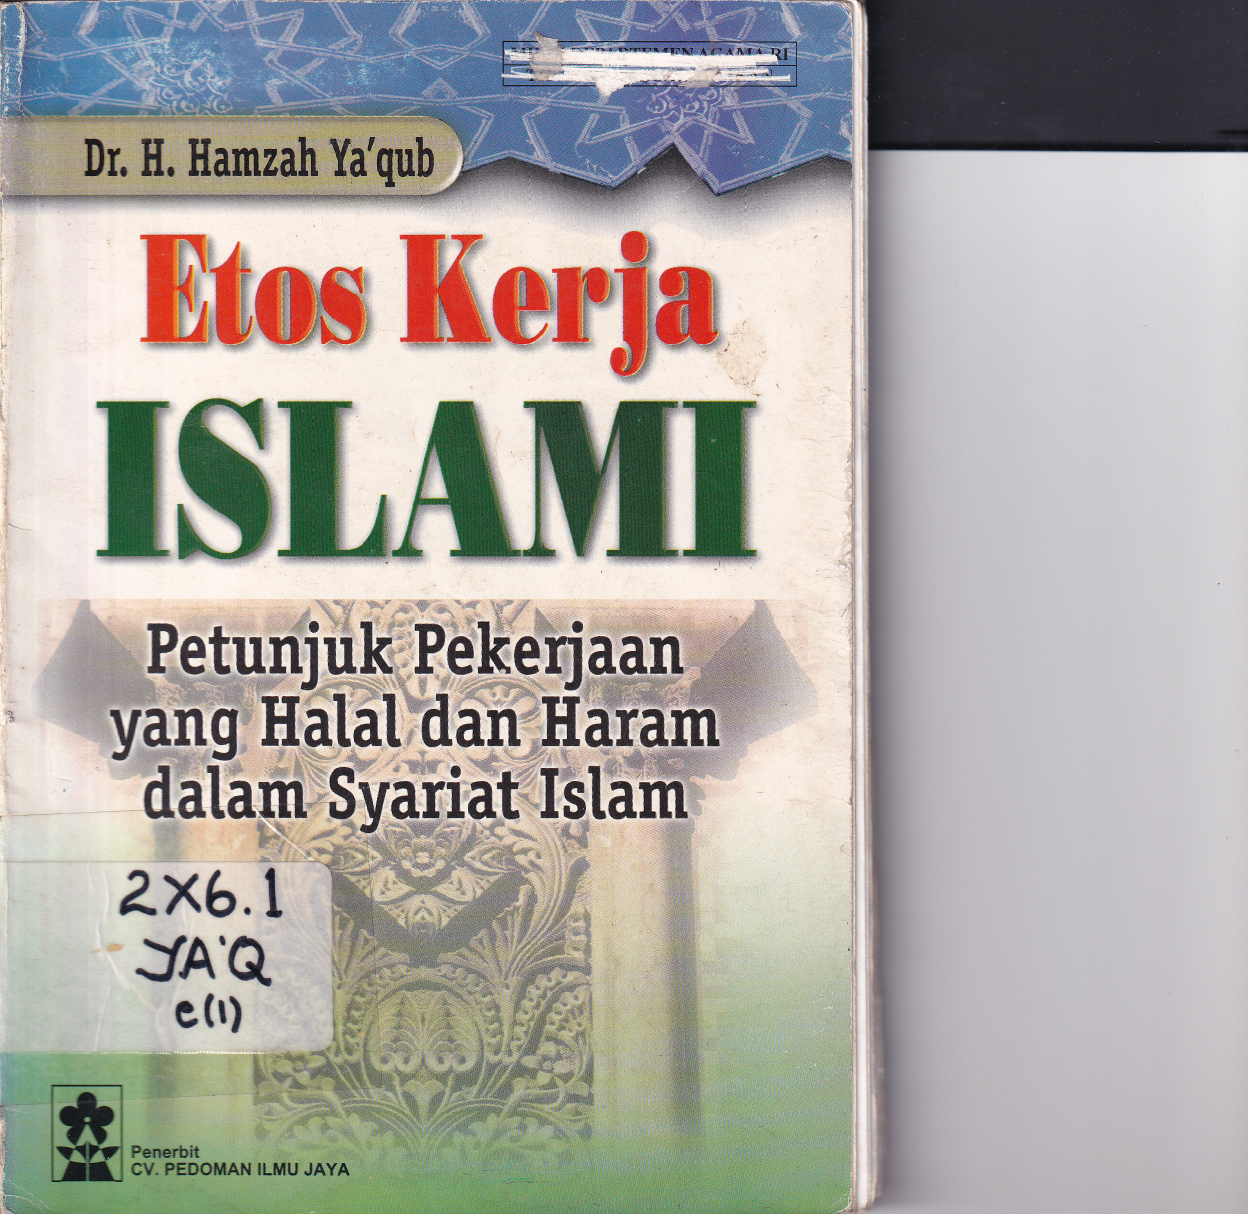 Etos Kerja Islam: Petunjuk Pekerjaan yang Halal dan Haram dalam Syariat Islam (Cet. 3)